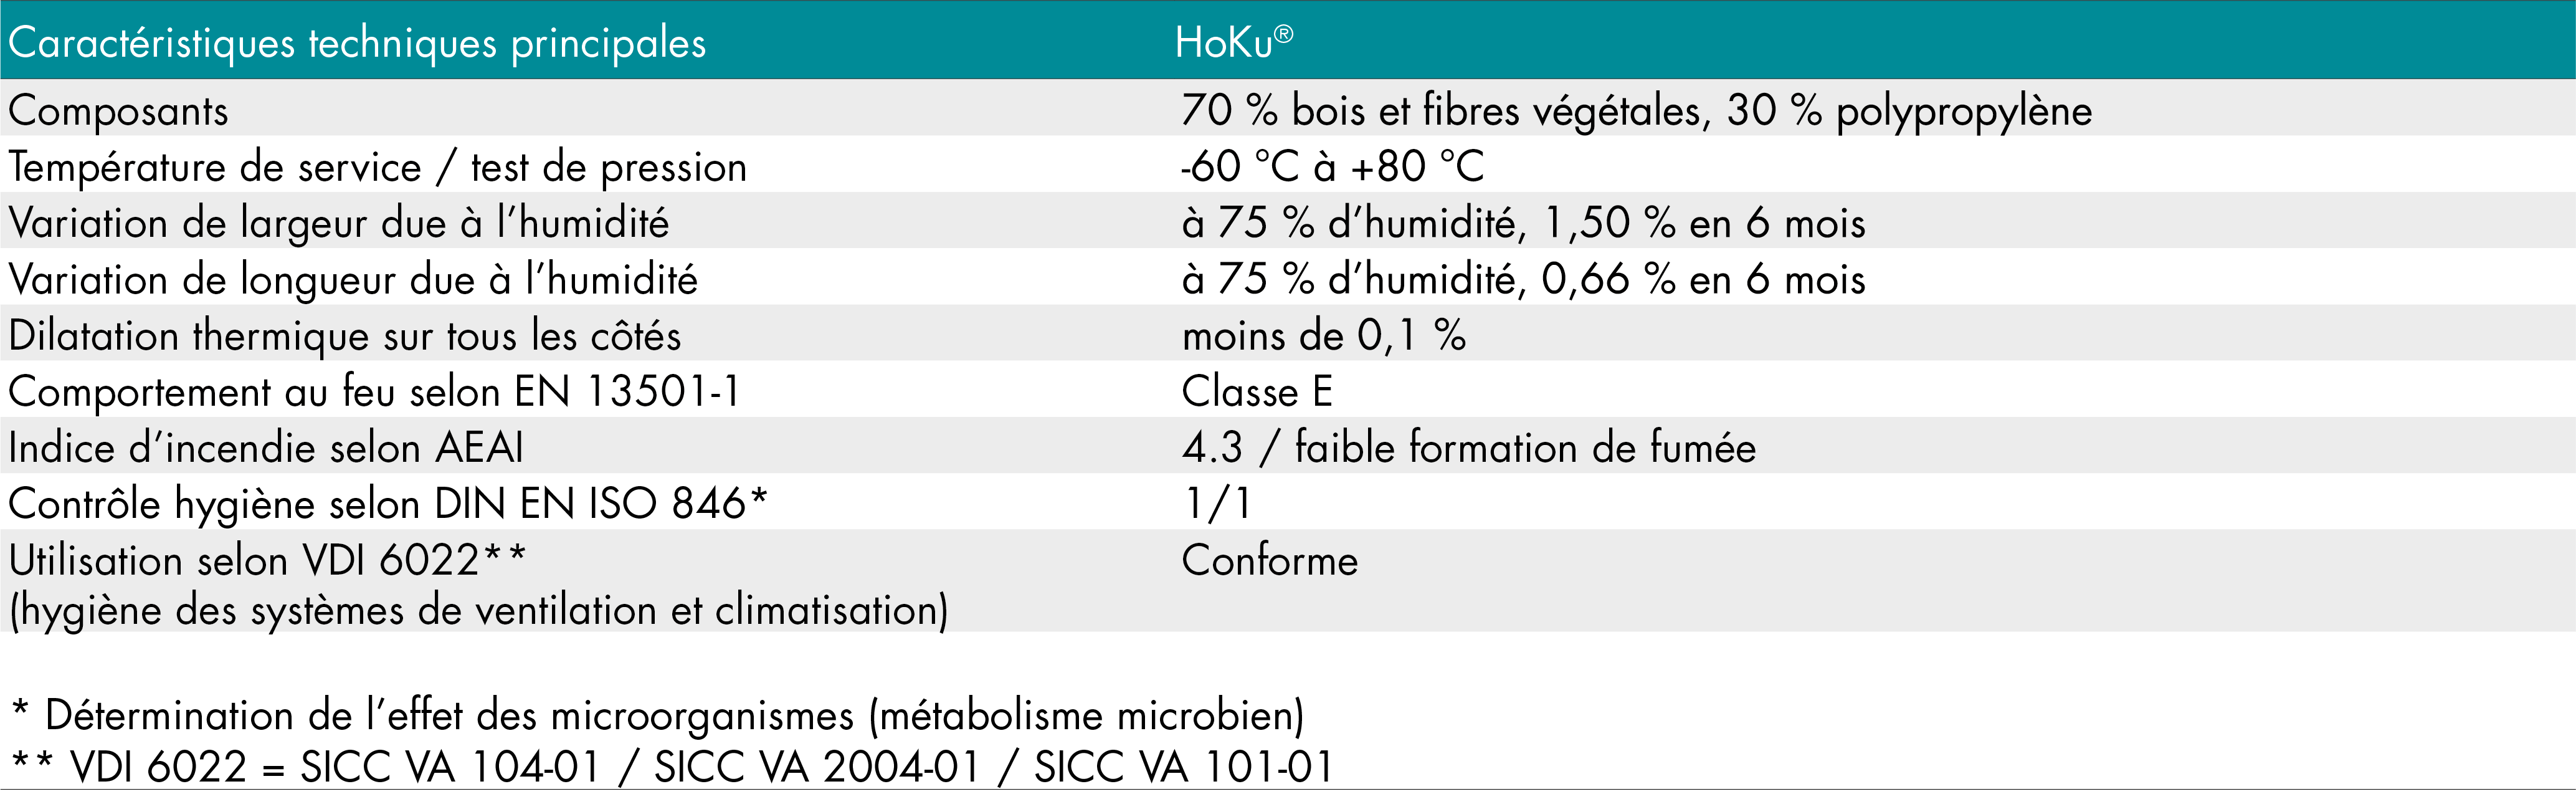 cadre de filtre HoKu®